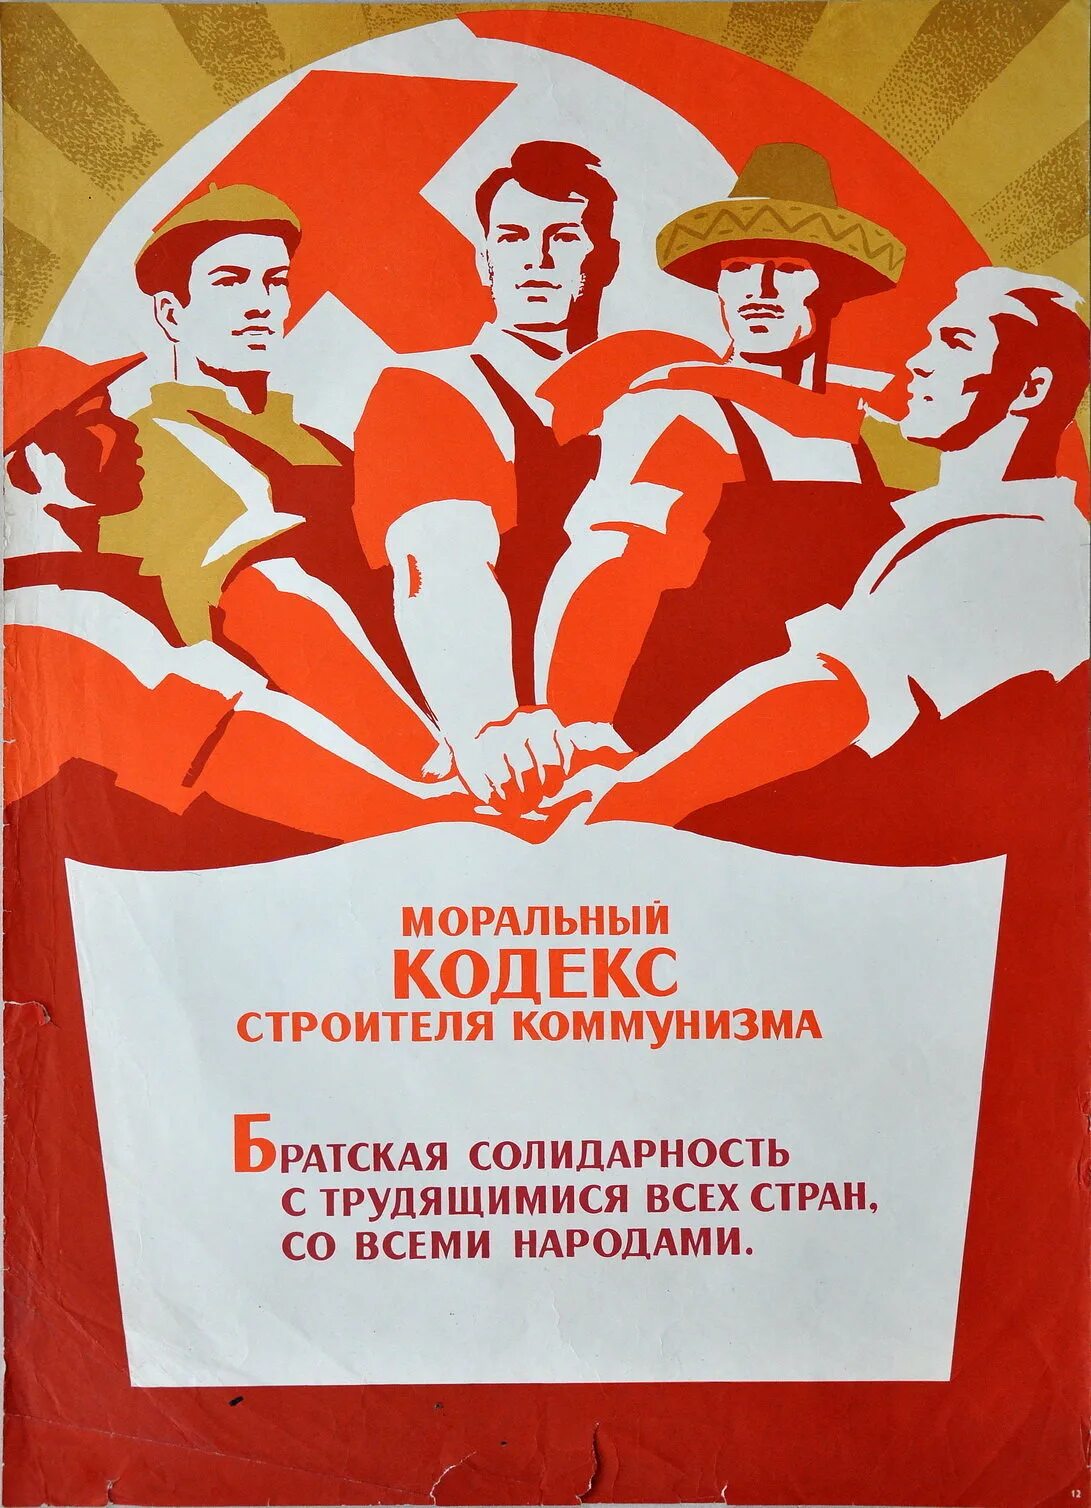 Моральный кодекс строителя коммунизма плакат. Кодекс строителя коммунизма. Плакаты коммунистов. Лозунг Строителей коммунизма.